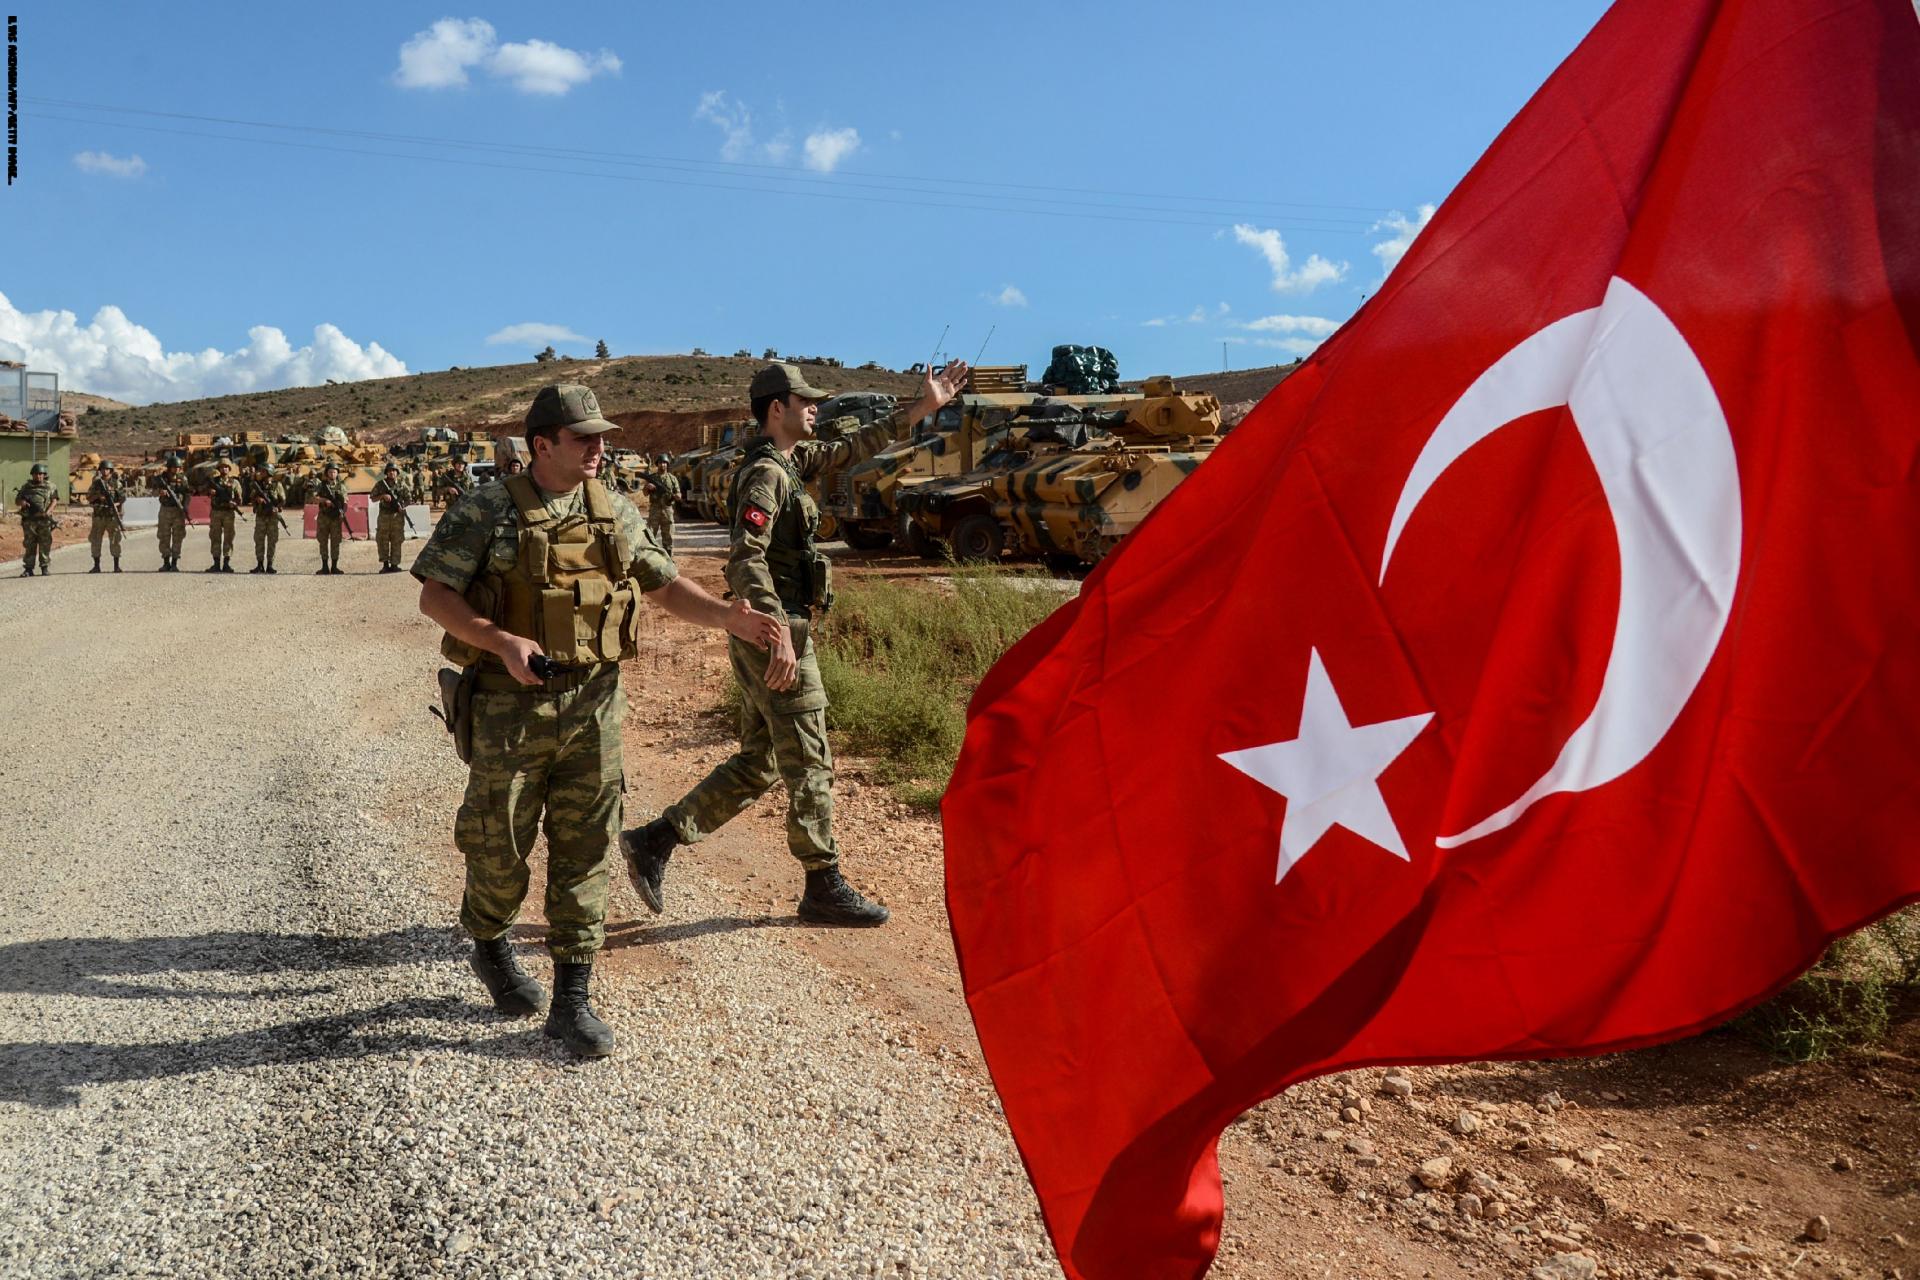 لماذا أوقفت تركيا عملياتها العسكرية في شمال سوريا؟ هل هي لعبة أمريكية تركية جديدة ؟ + خريطة ميدانية